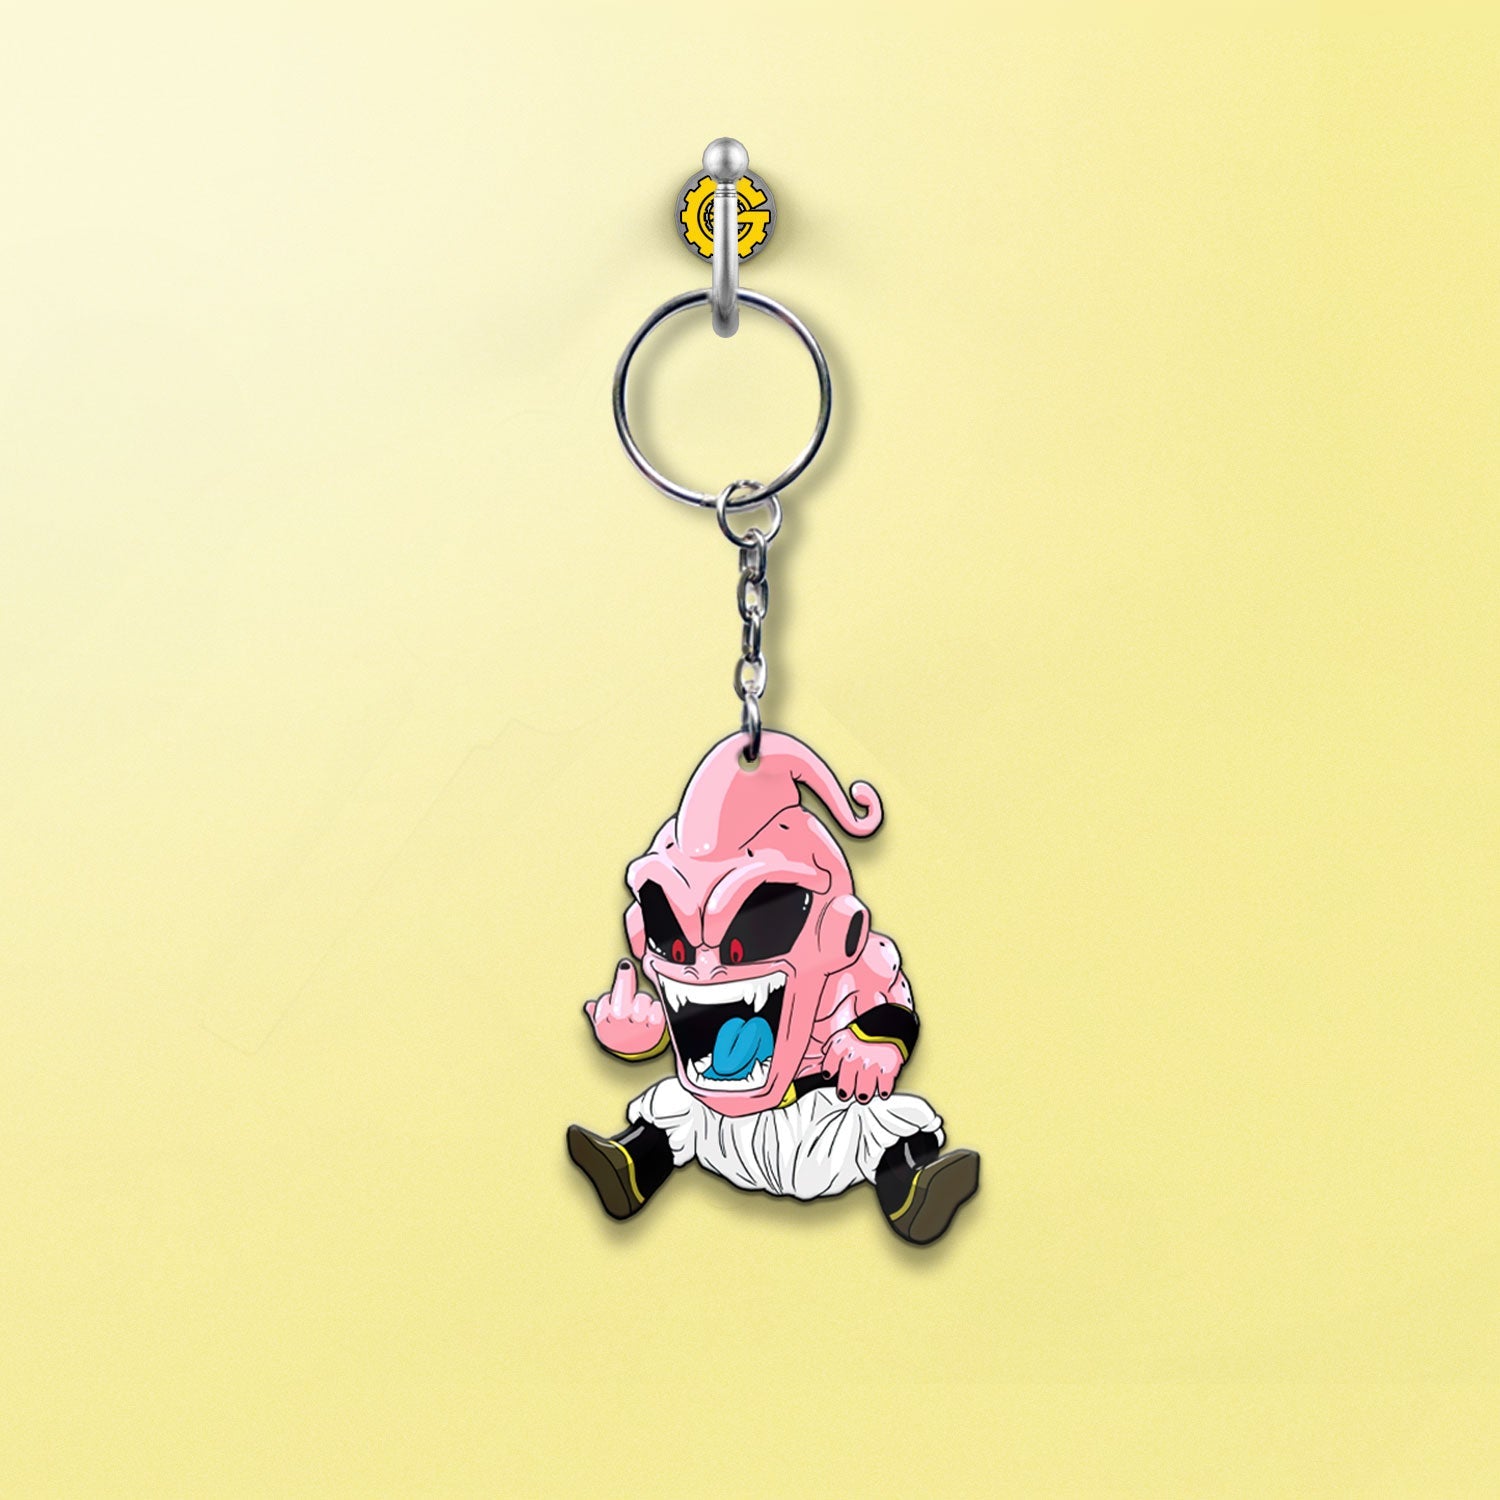 Majin Buu Keychain Custom Dragon Ball Anime Car Accessories - Gearcarcover - 2